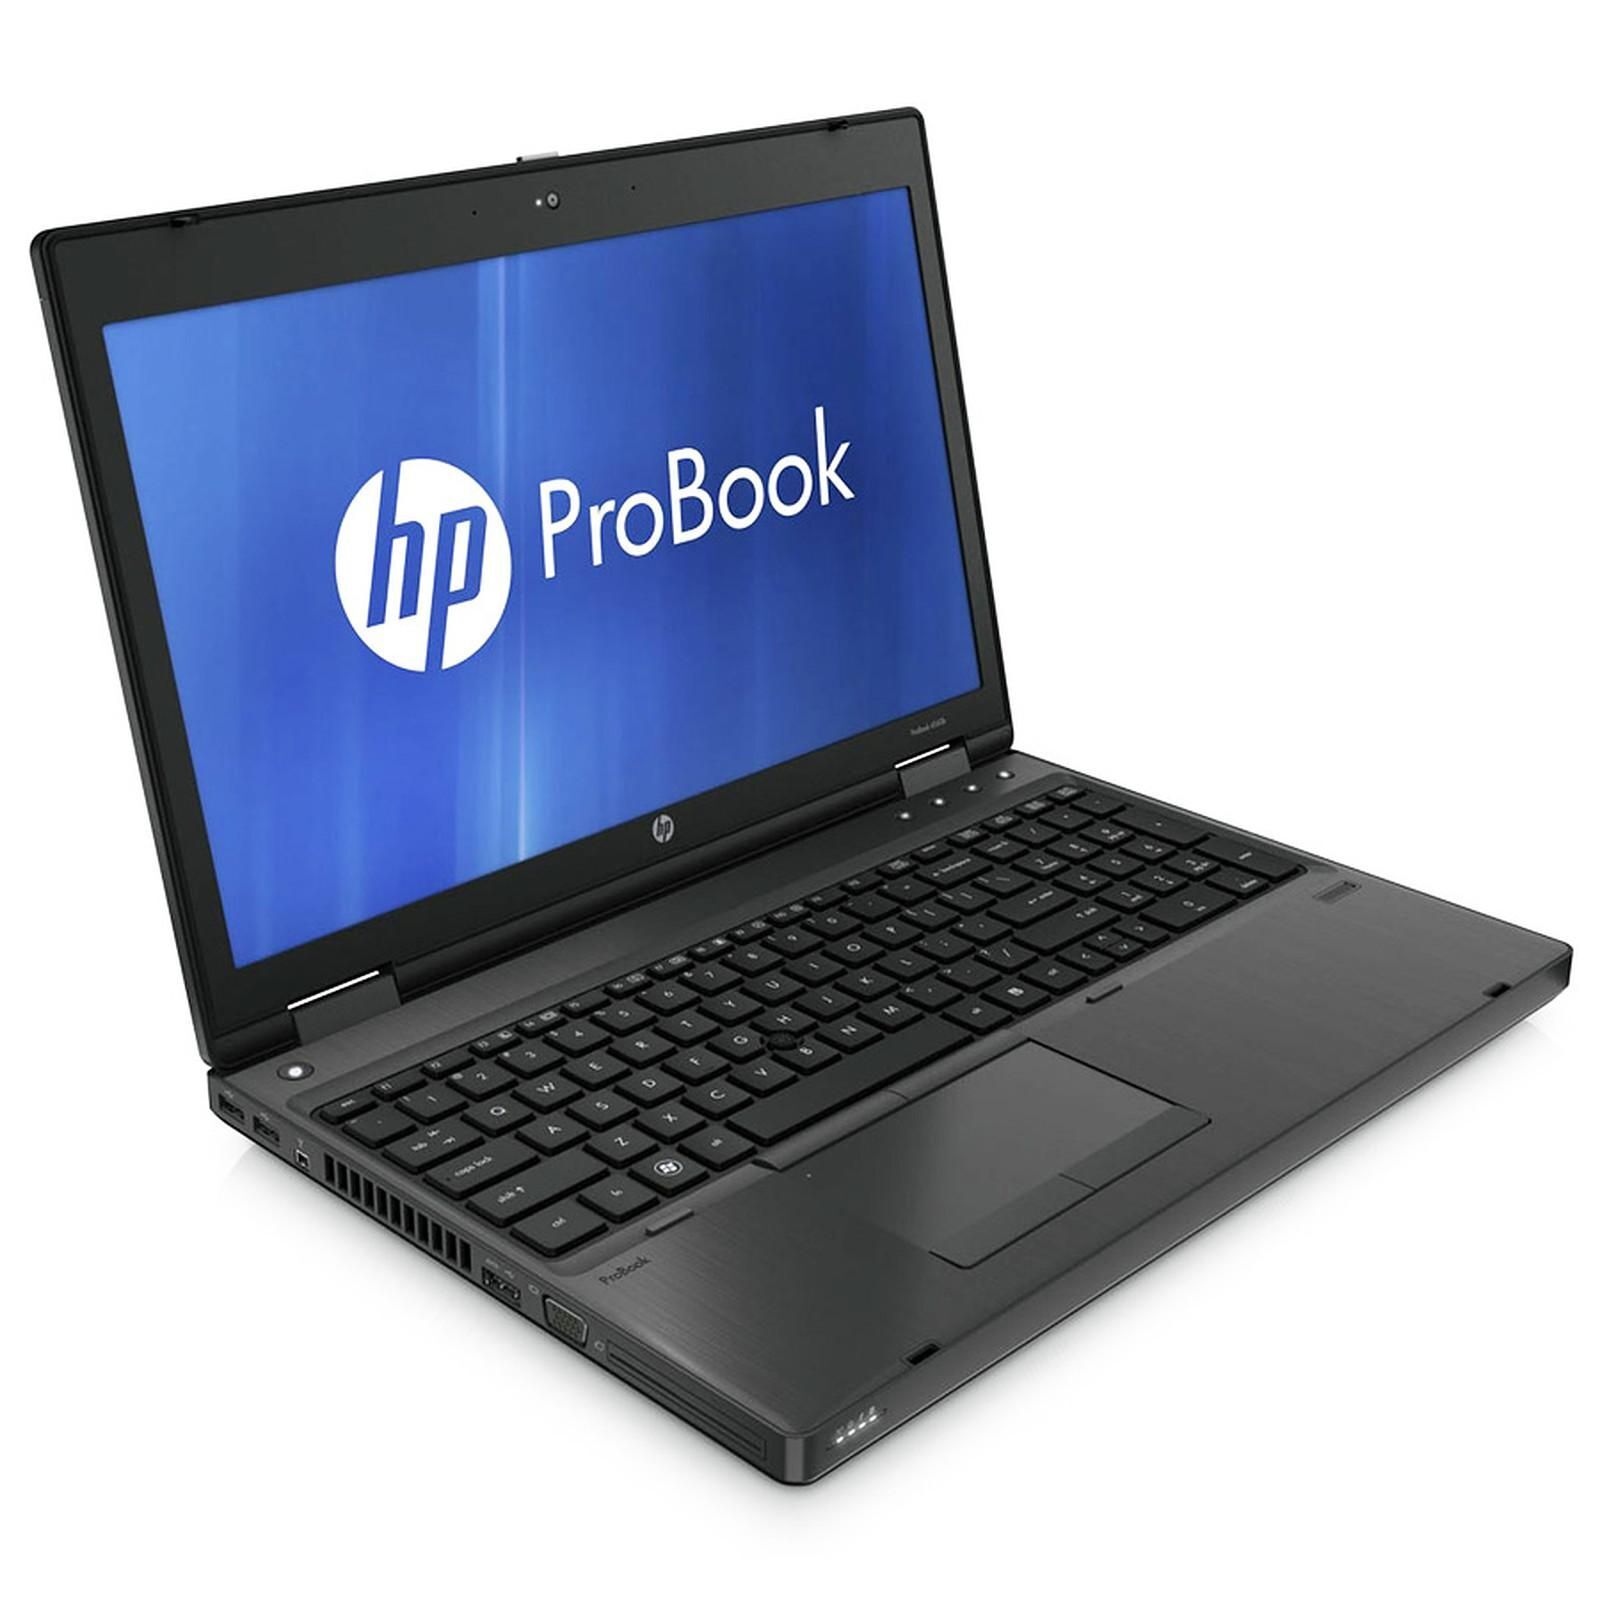 HP ProBook 6560b Intel i5 2450M 2.50GHz 4GB RAM 320GB HDD 15.6" NO OS Image 2